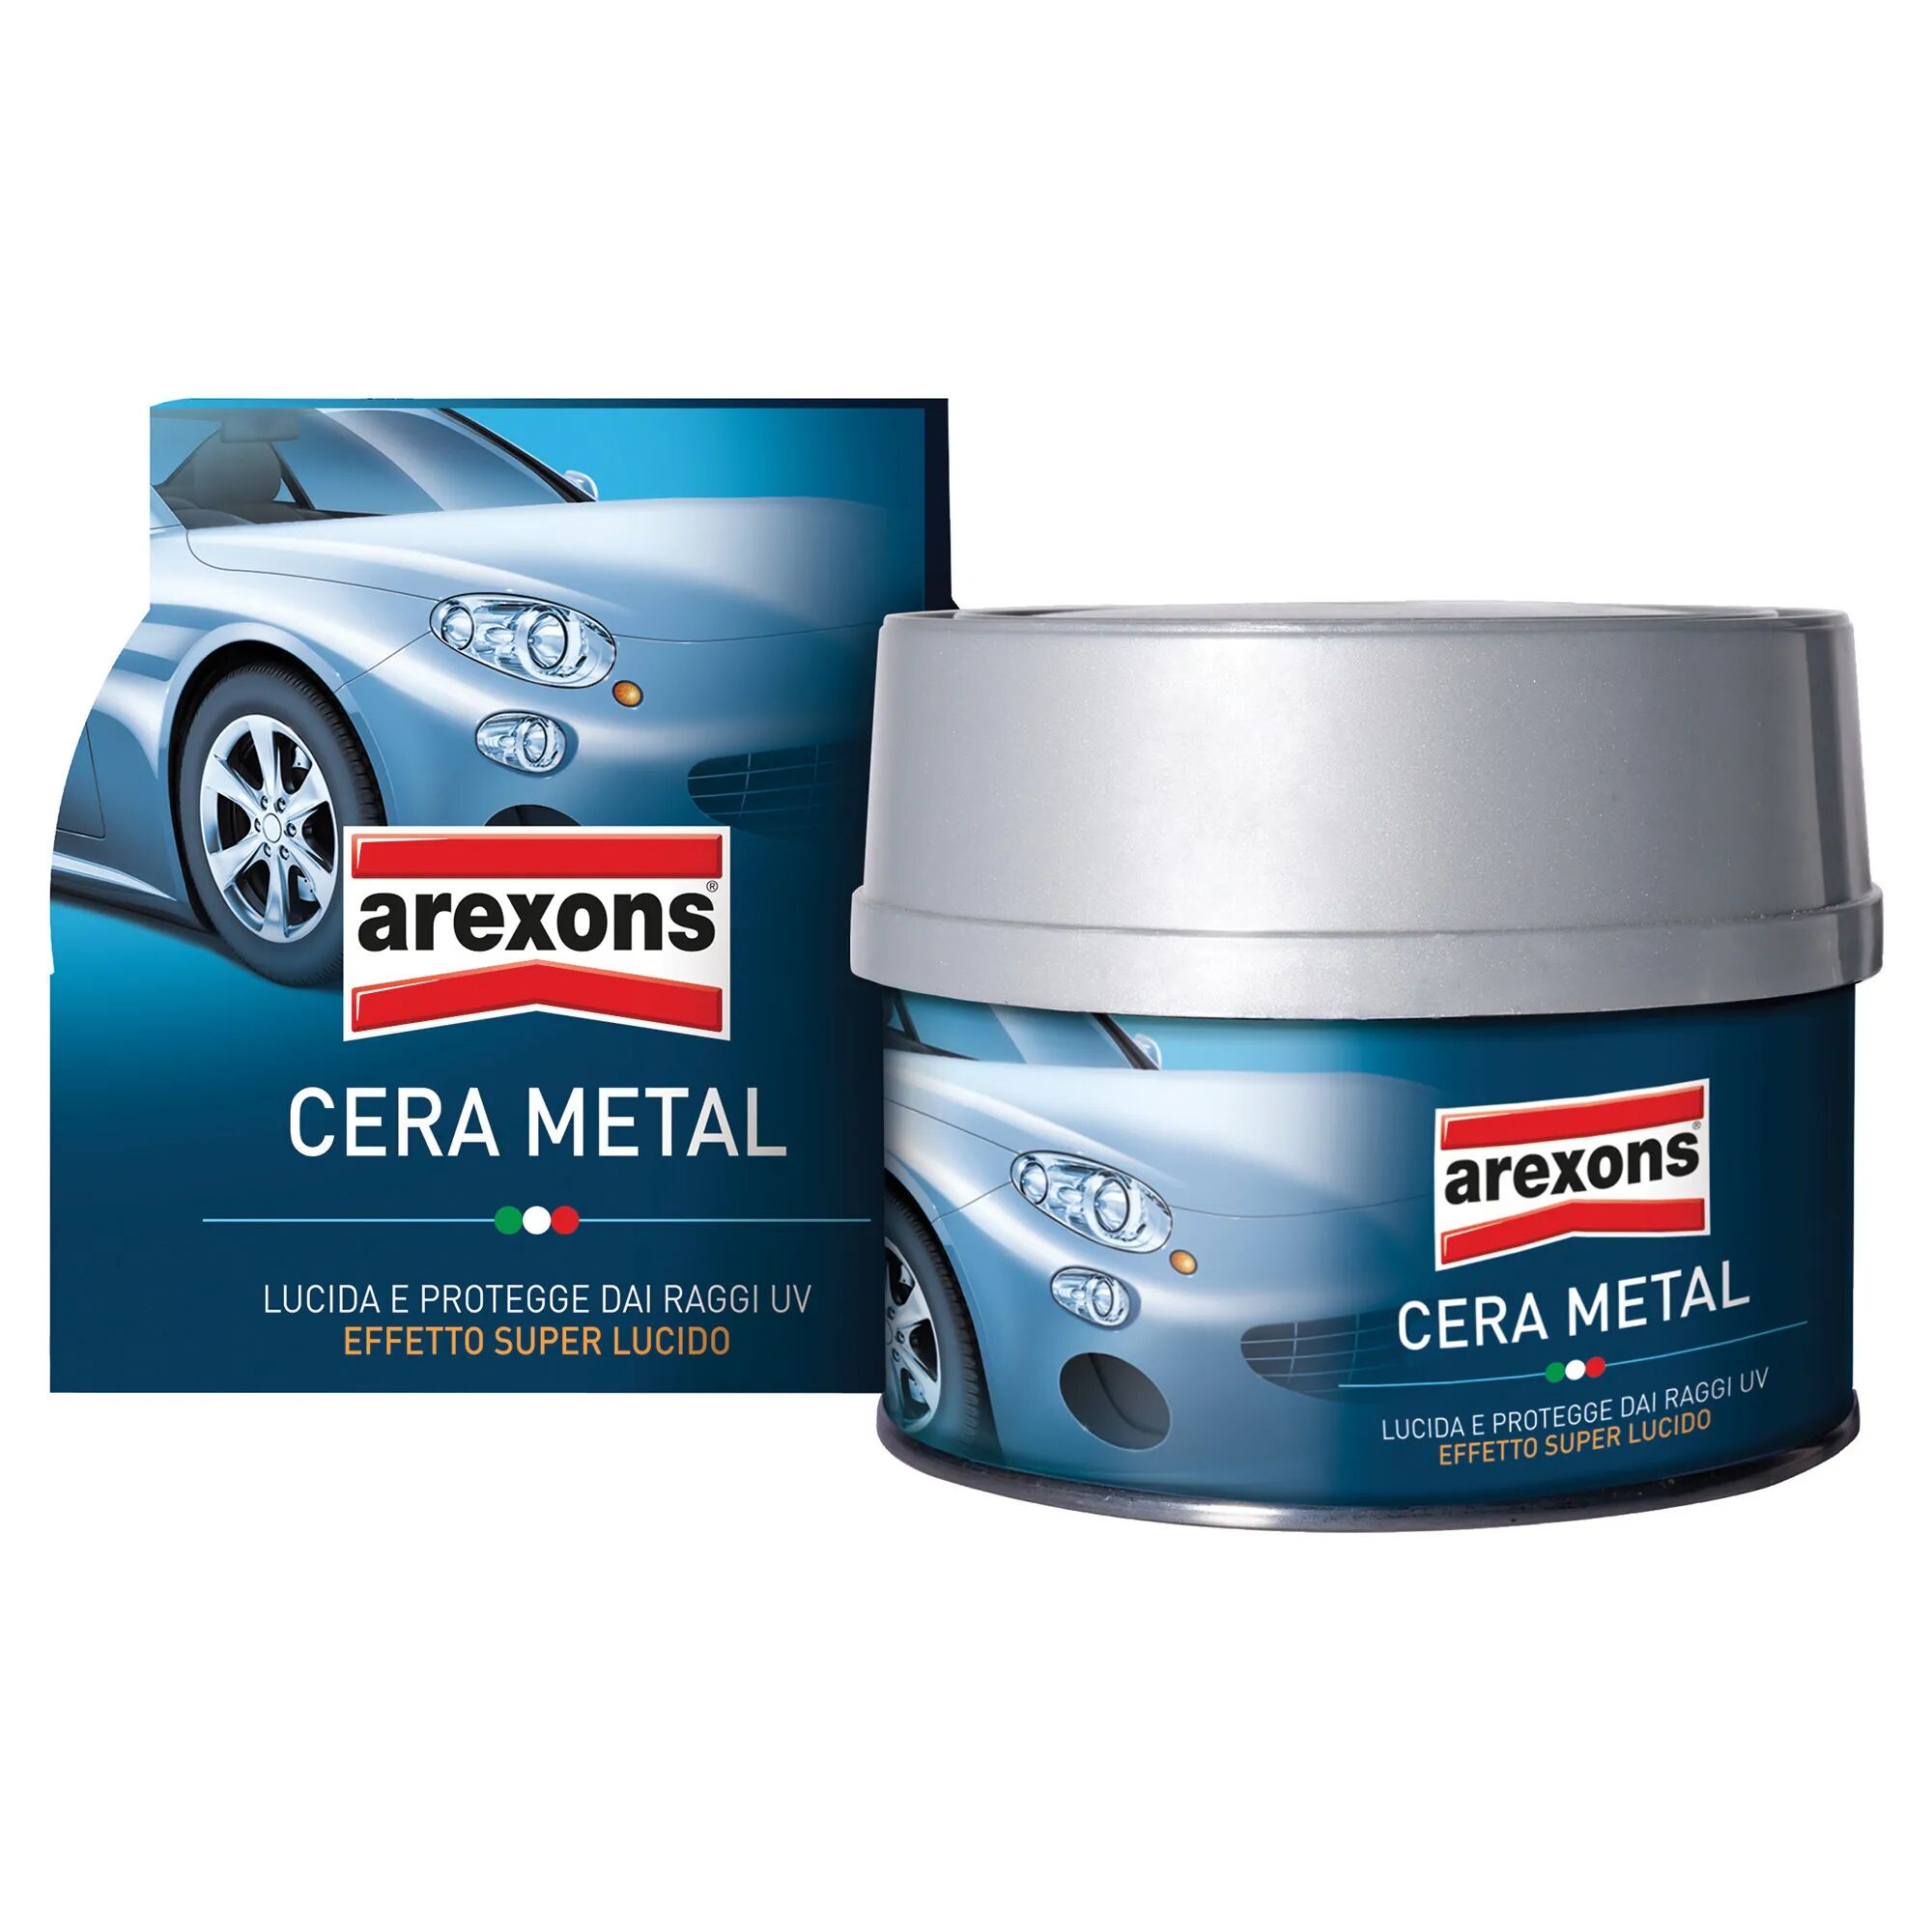 arexons cera metal  250 ml con spugna effetto superlucido